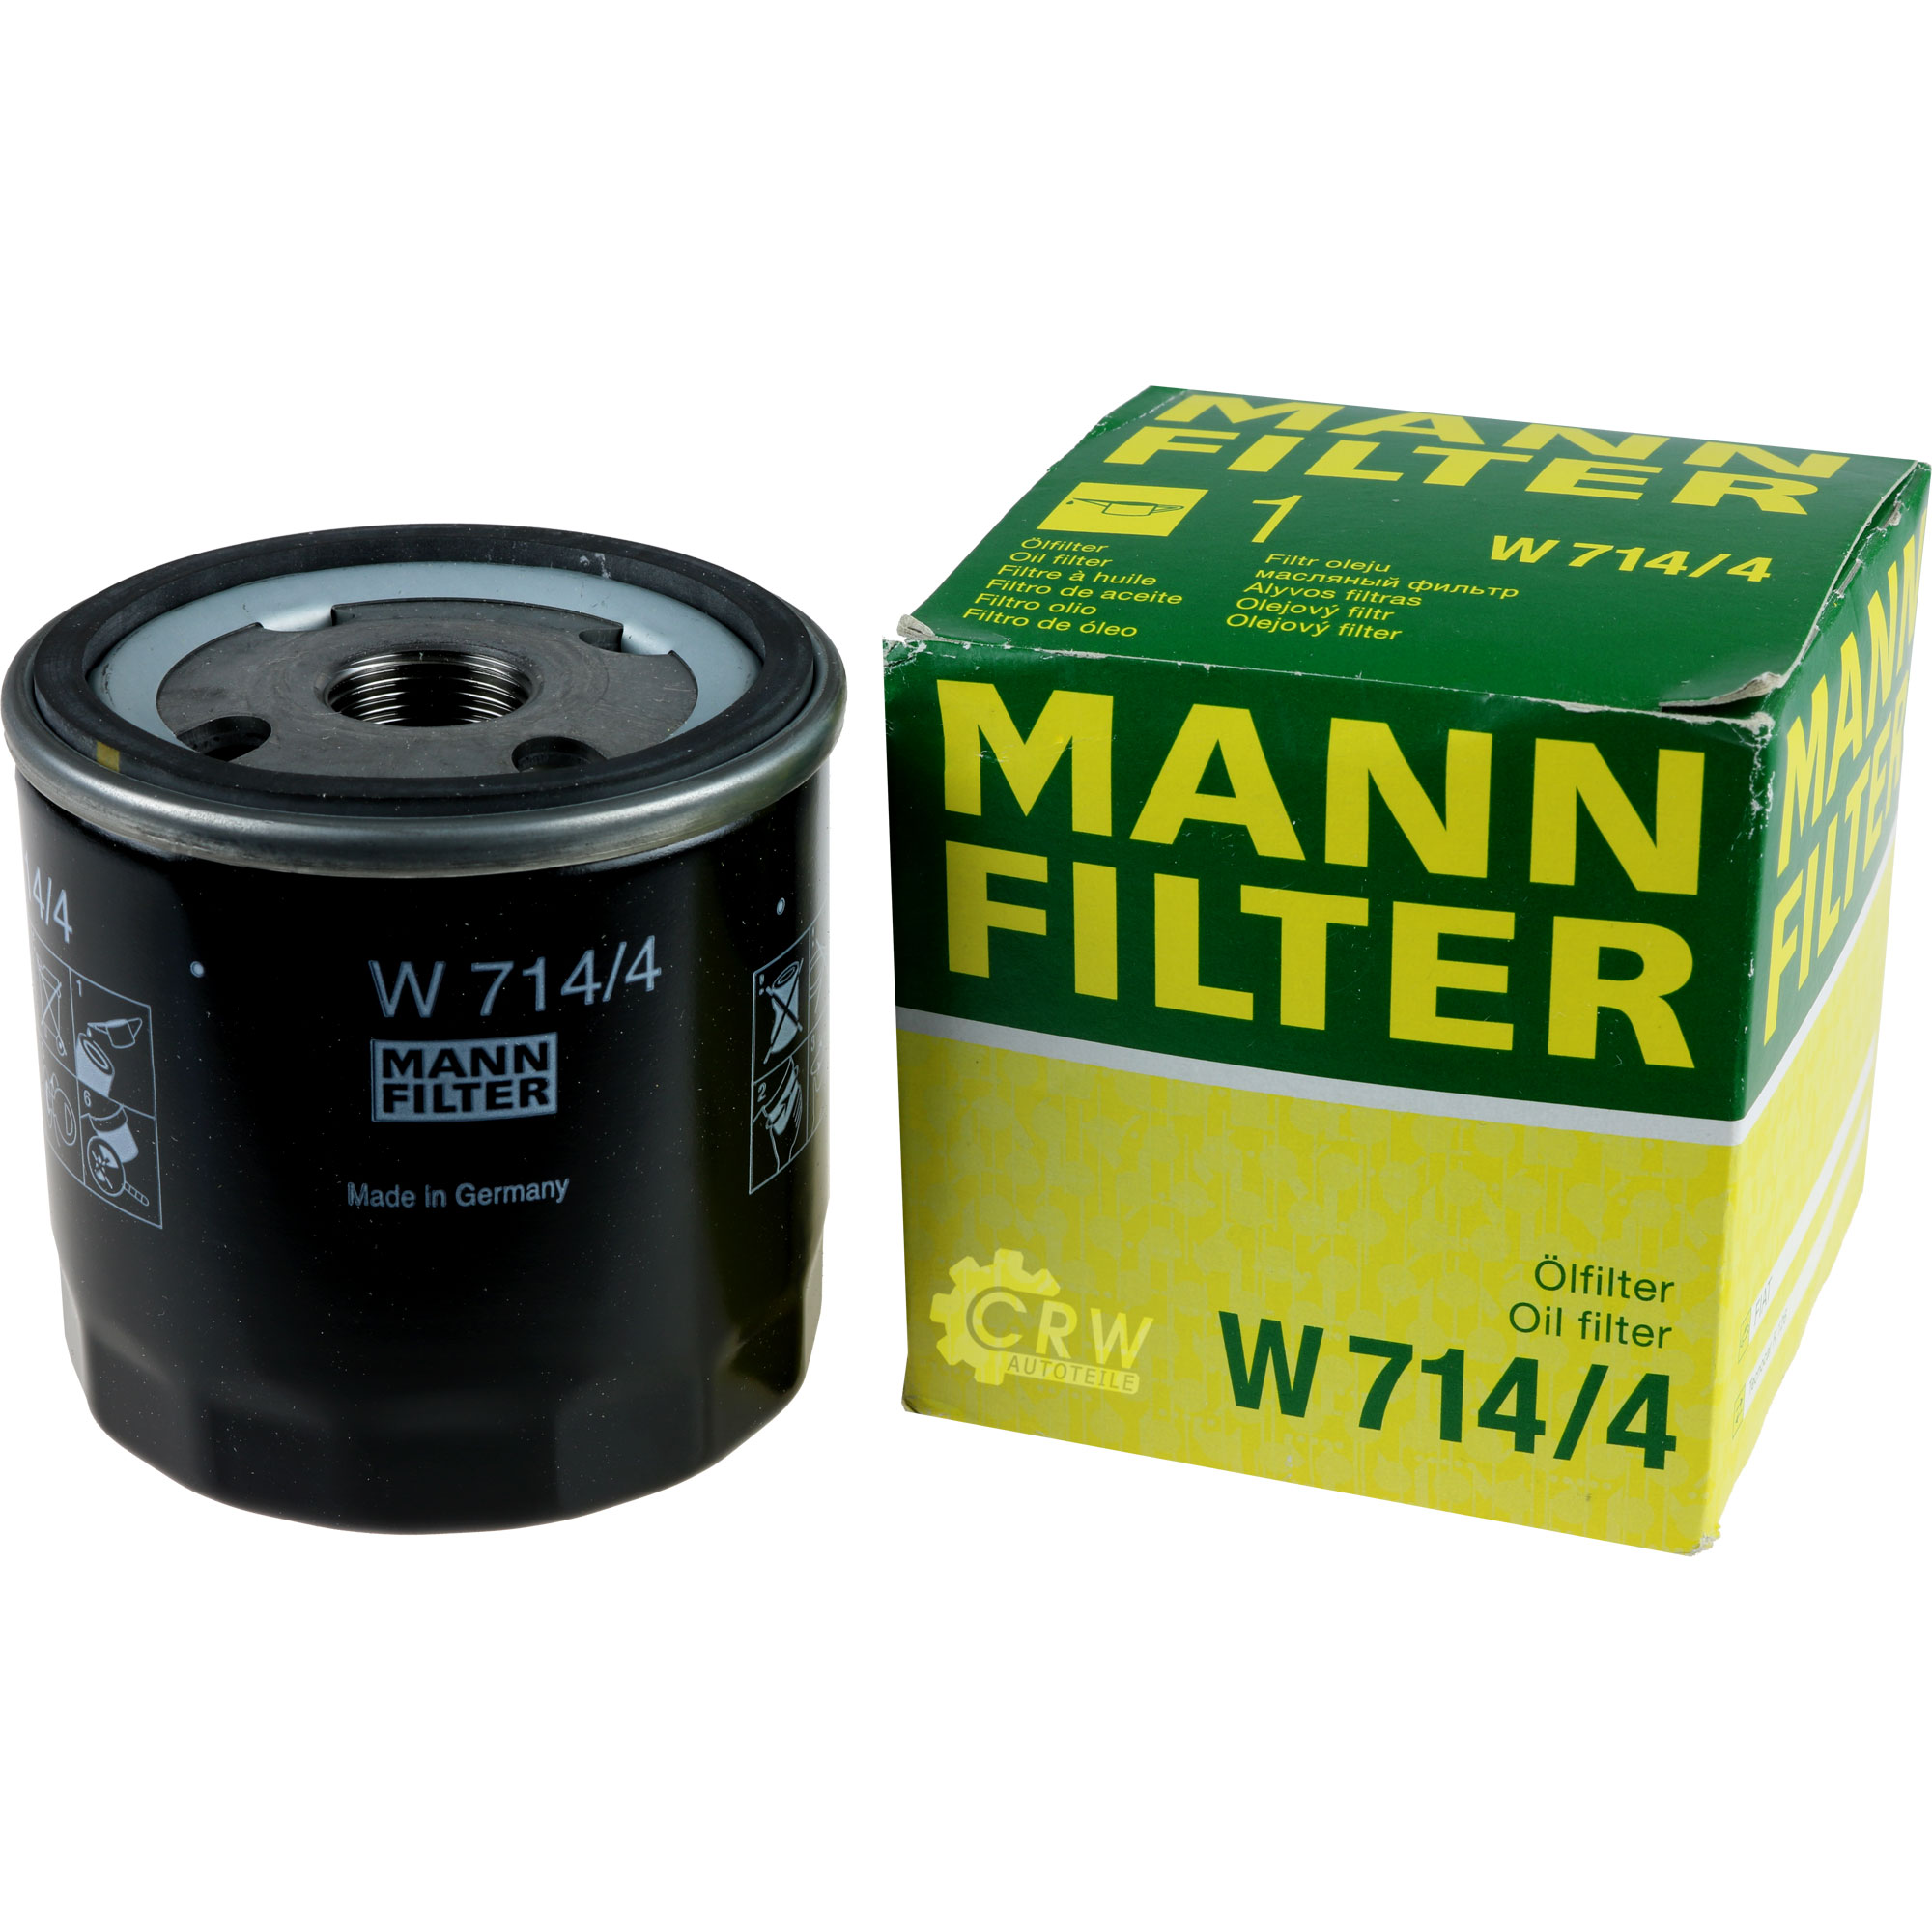 MANN-FILTER Ölfilter W 713/24 Oil Filter